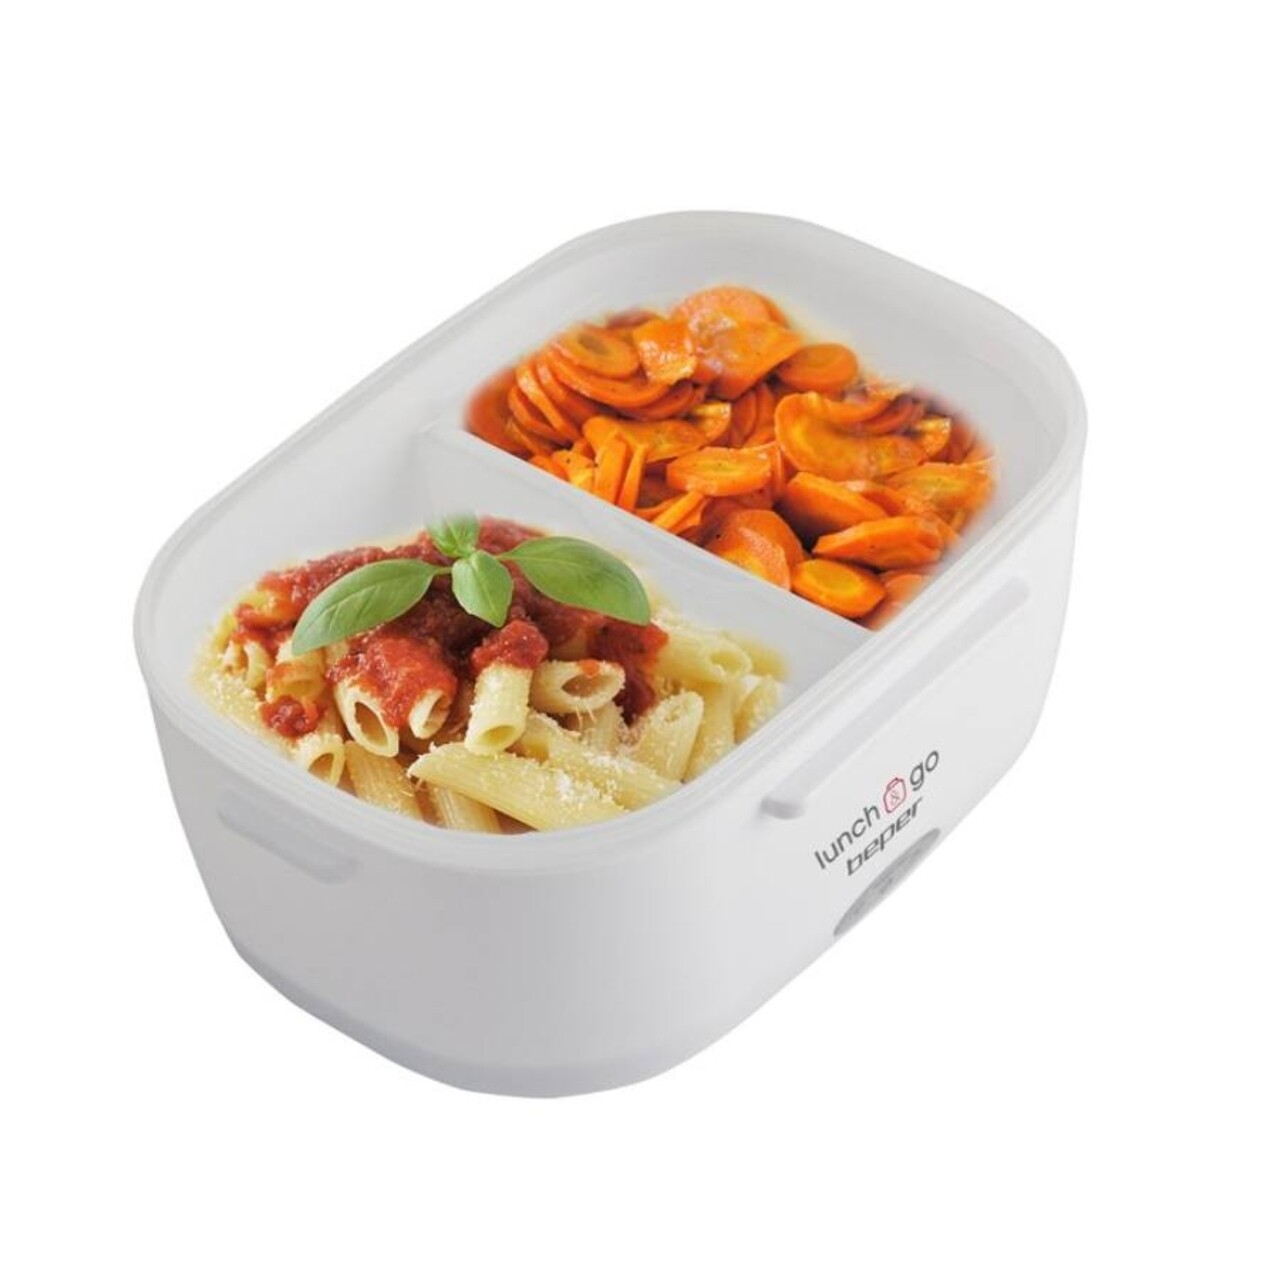 Lunch Box -Cutie Electrica Pentru Incalzirea Pranzului 90.920G, Beper, 40 W, 450 Ml, 1000 Ml, Alb/rosu